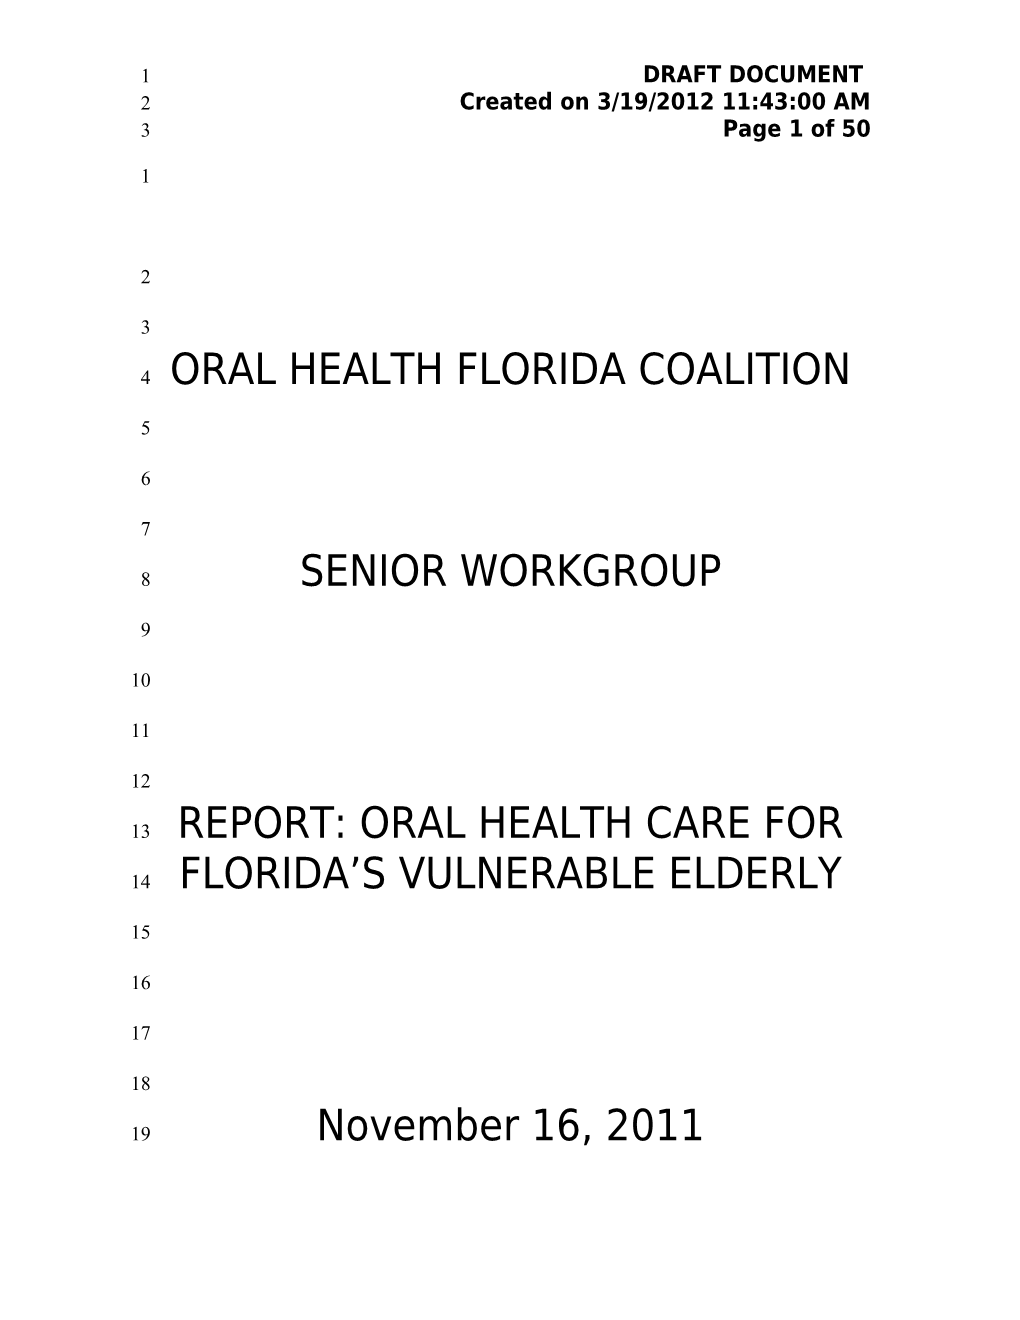 Oral Health Florida Coalition